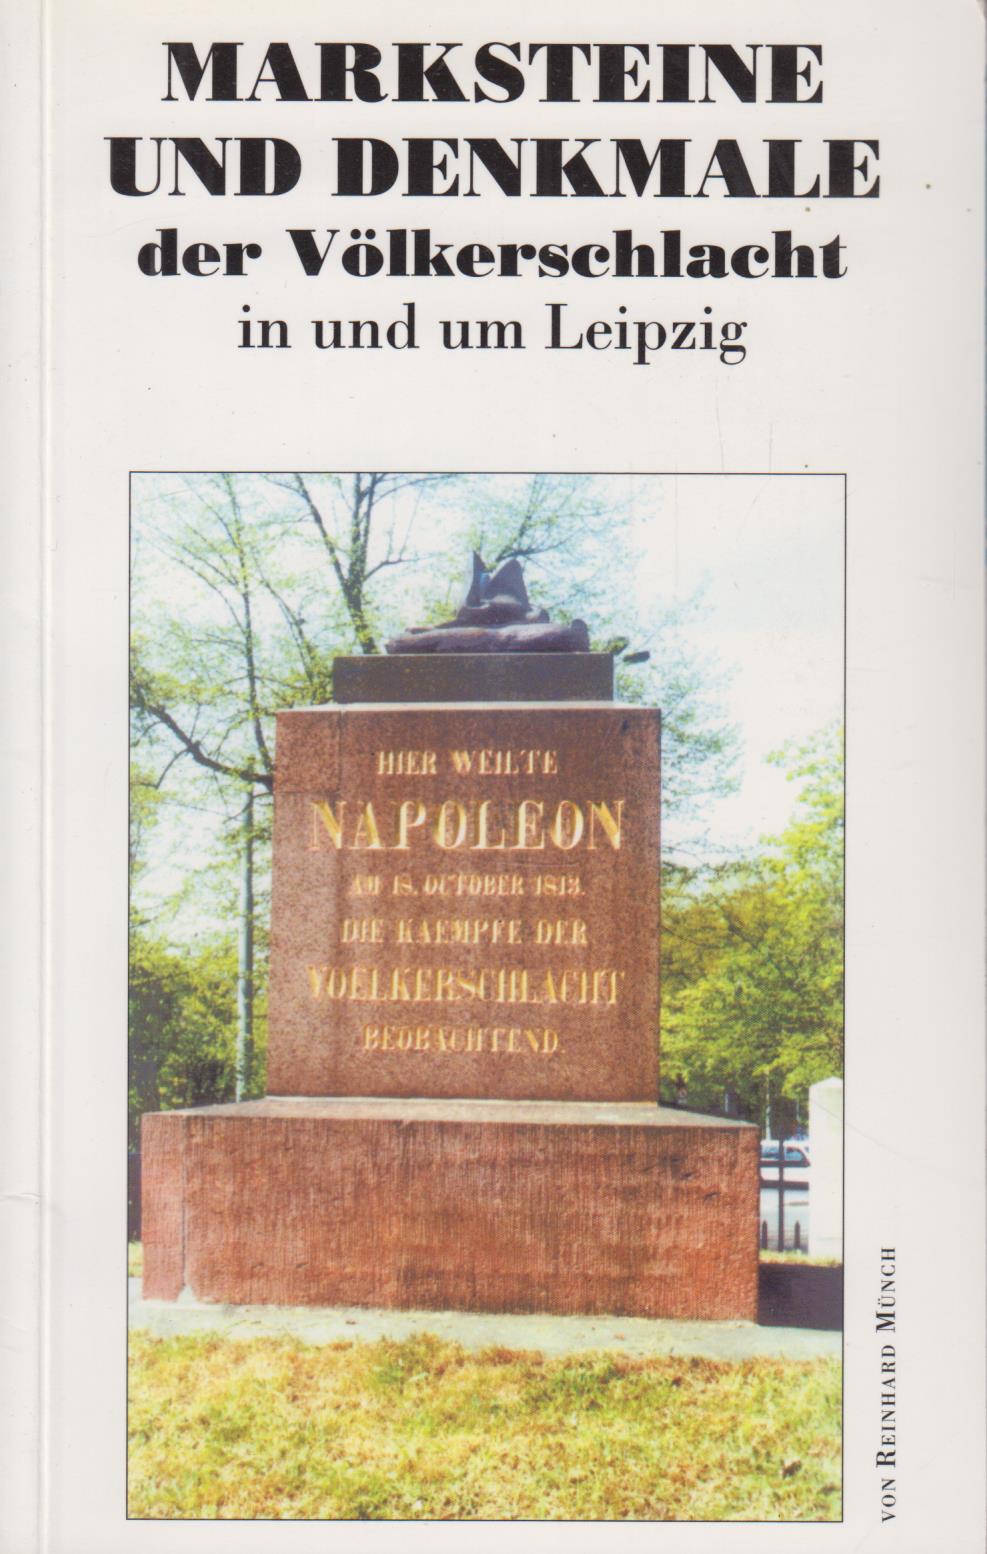 Marksteine und Denkmale der Völkerschlacht in und um Leipzig - Münch, Reinhard